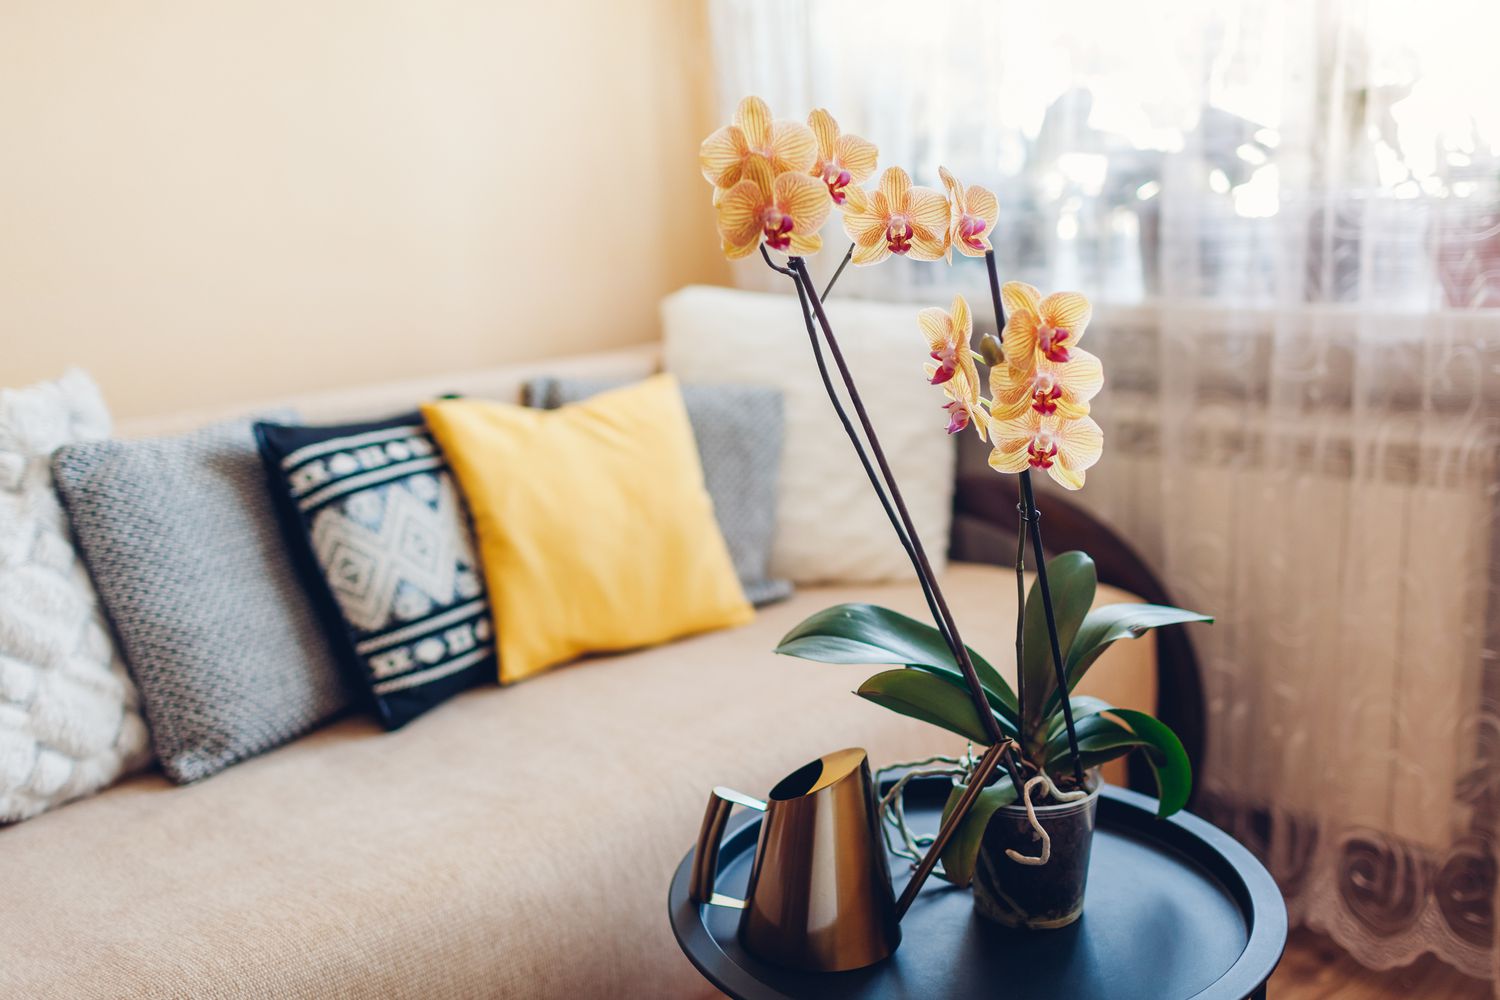 Interieur des Wohnzimmers. Gelbe, blühende Orchidee auf dem Couchtisch mit Gießkanne